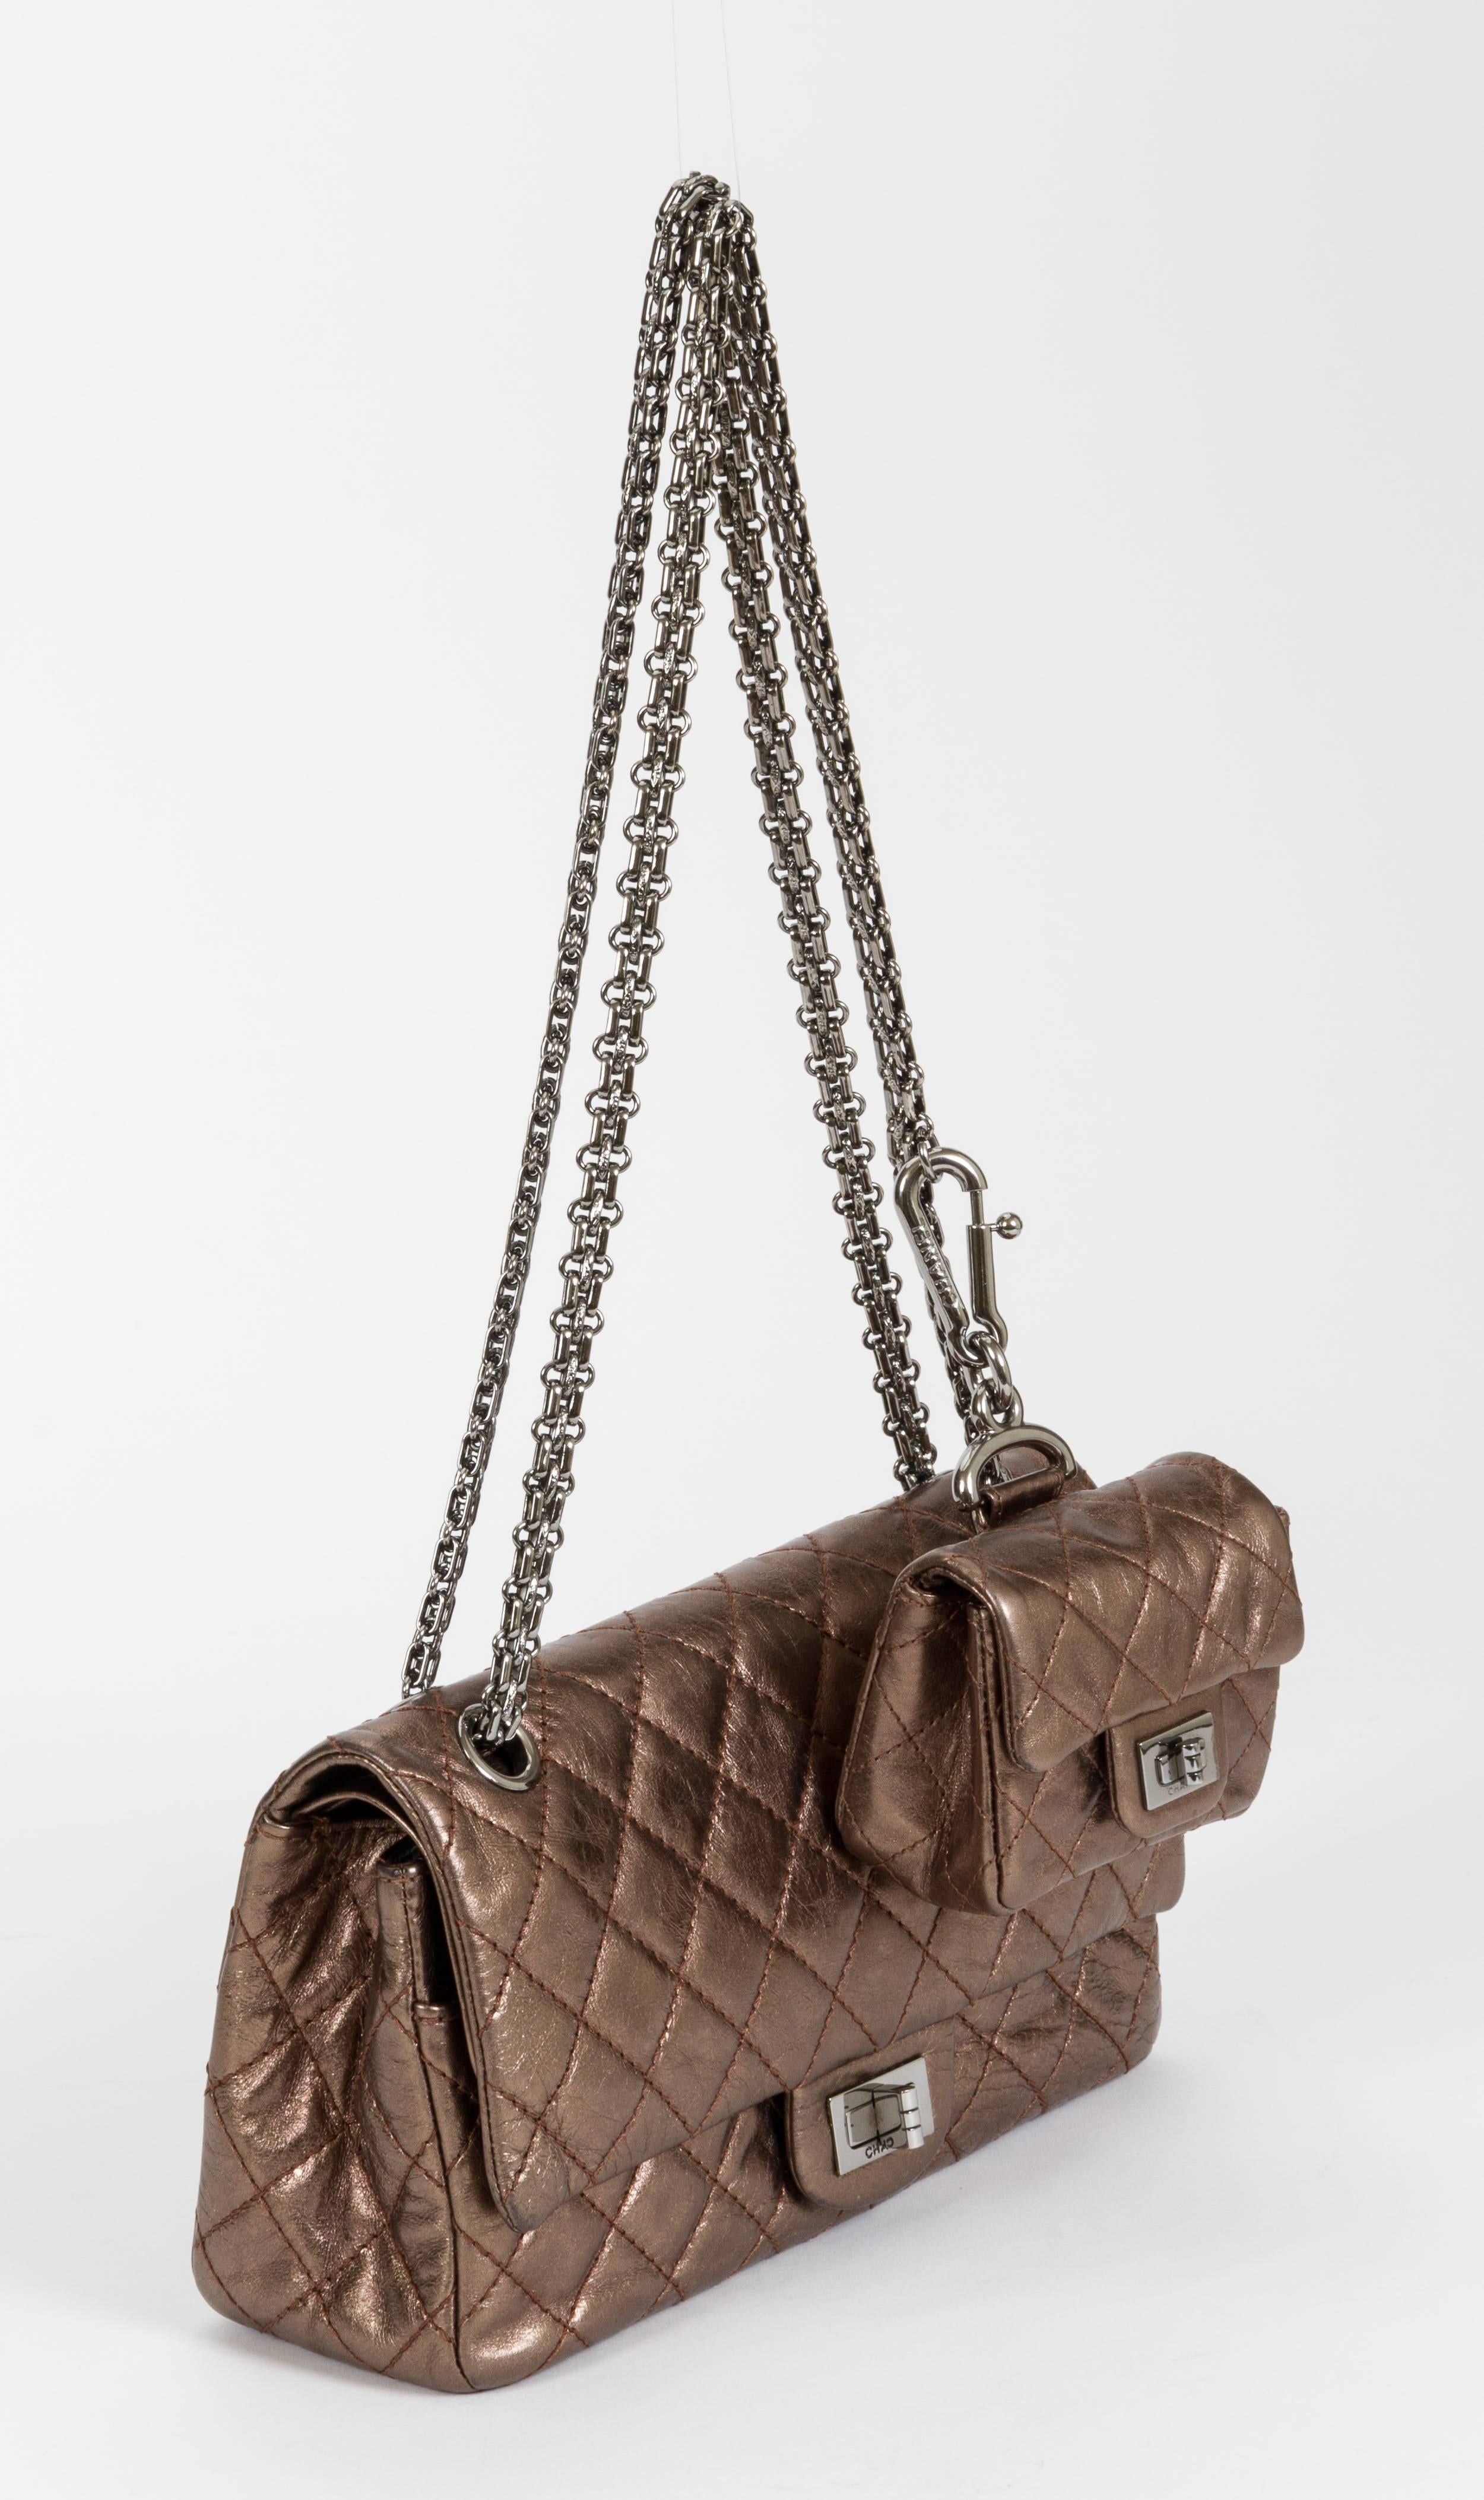 Chanel metallic bronze double-flap bag with detachable mini charm bag. Shoulder drop, 12